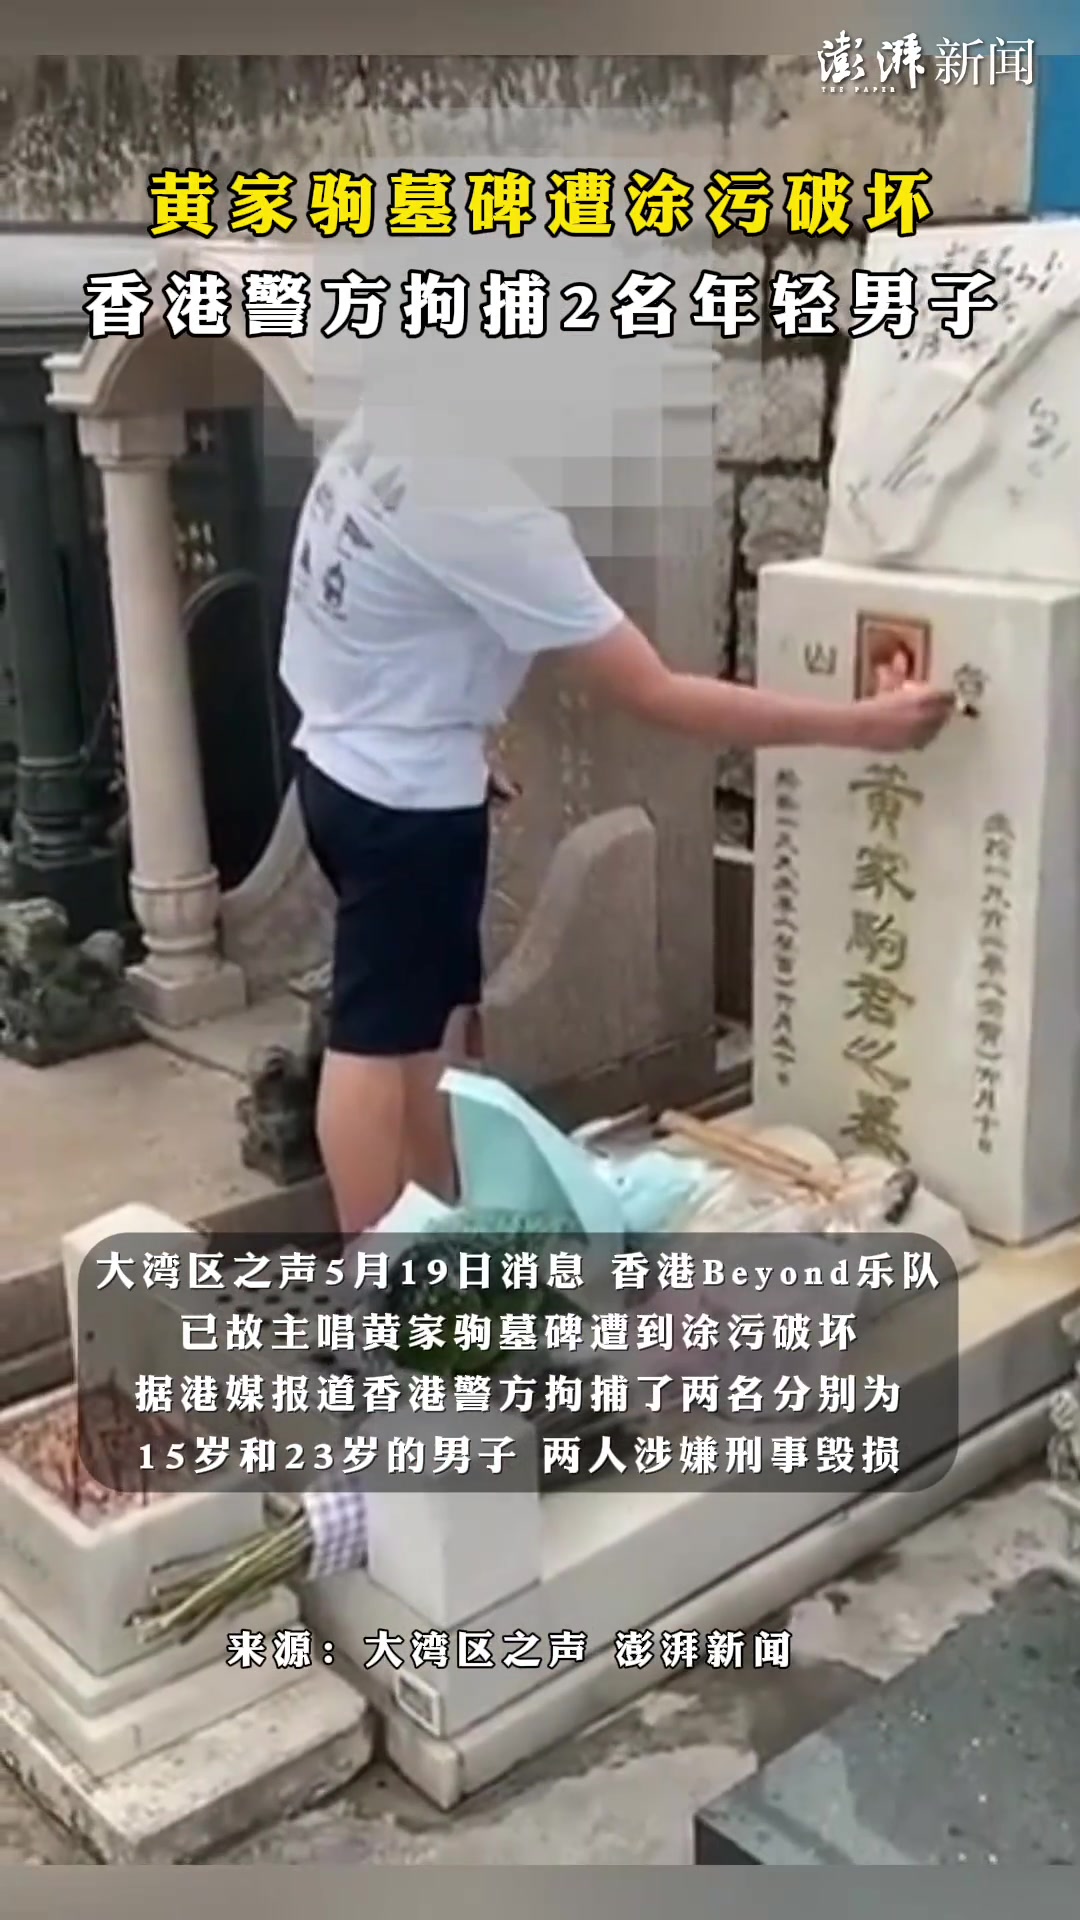 黄家驹墓碑遭涂污破坏，香港警方已拘捕2名年轻男子